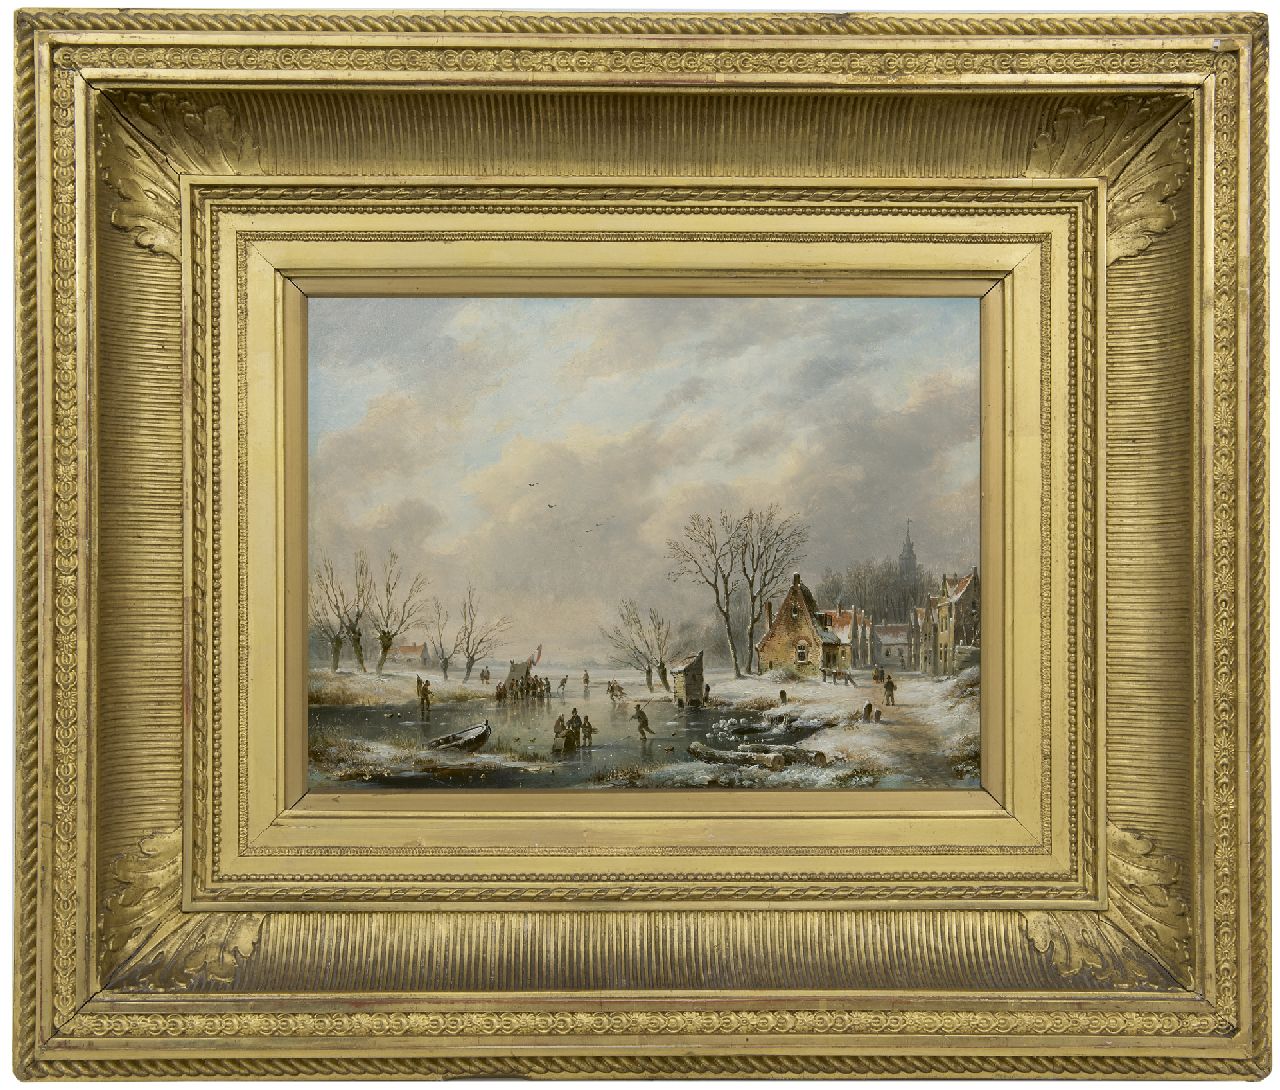 Hendriks G.  | Gerardus 'George Henry' Hendriks, IJspret bij een winters dorpje, olieverf op paneel 26,0 x 35,1 cm